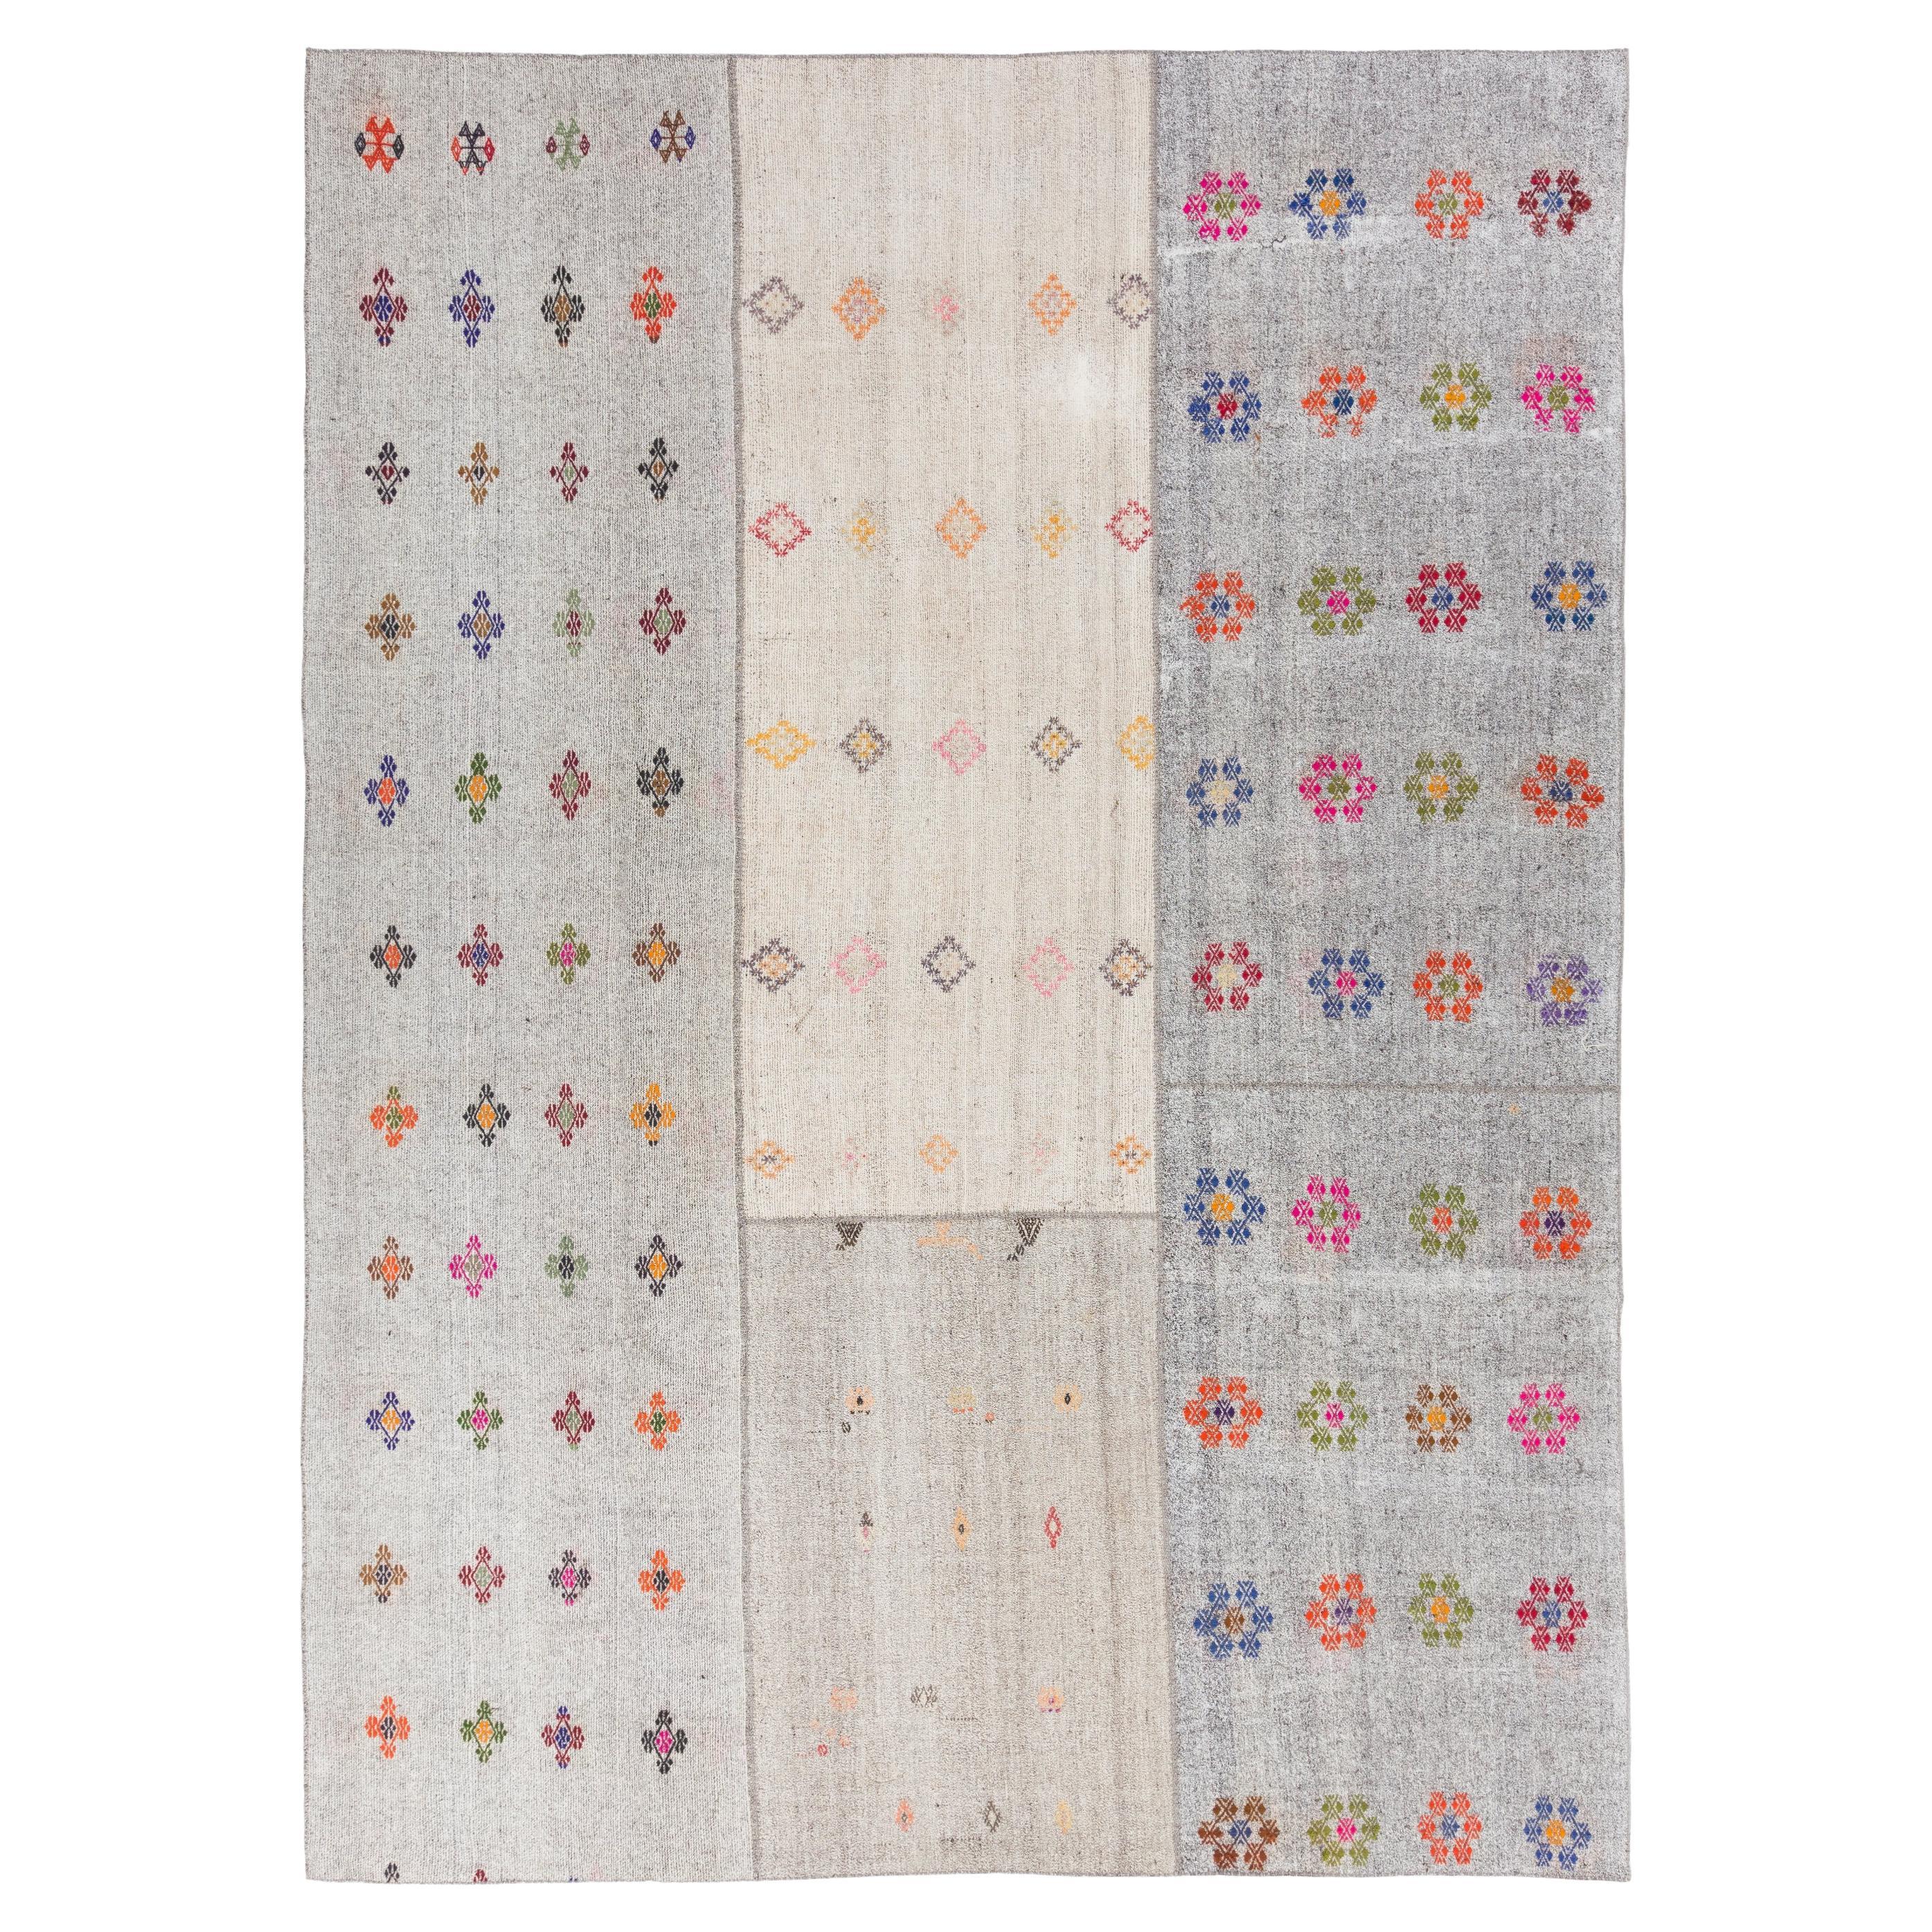 10.5x14.3 Ft Vintage Turkish Kilim Rug. Handmade Floor Covering, Floral Carpet.  For Sale